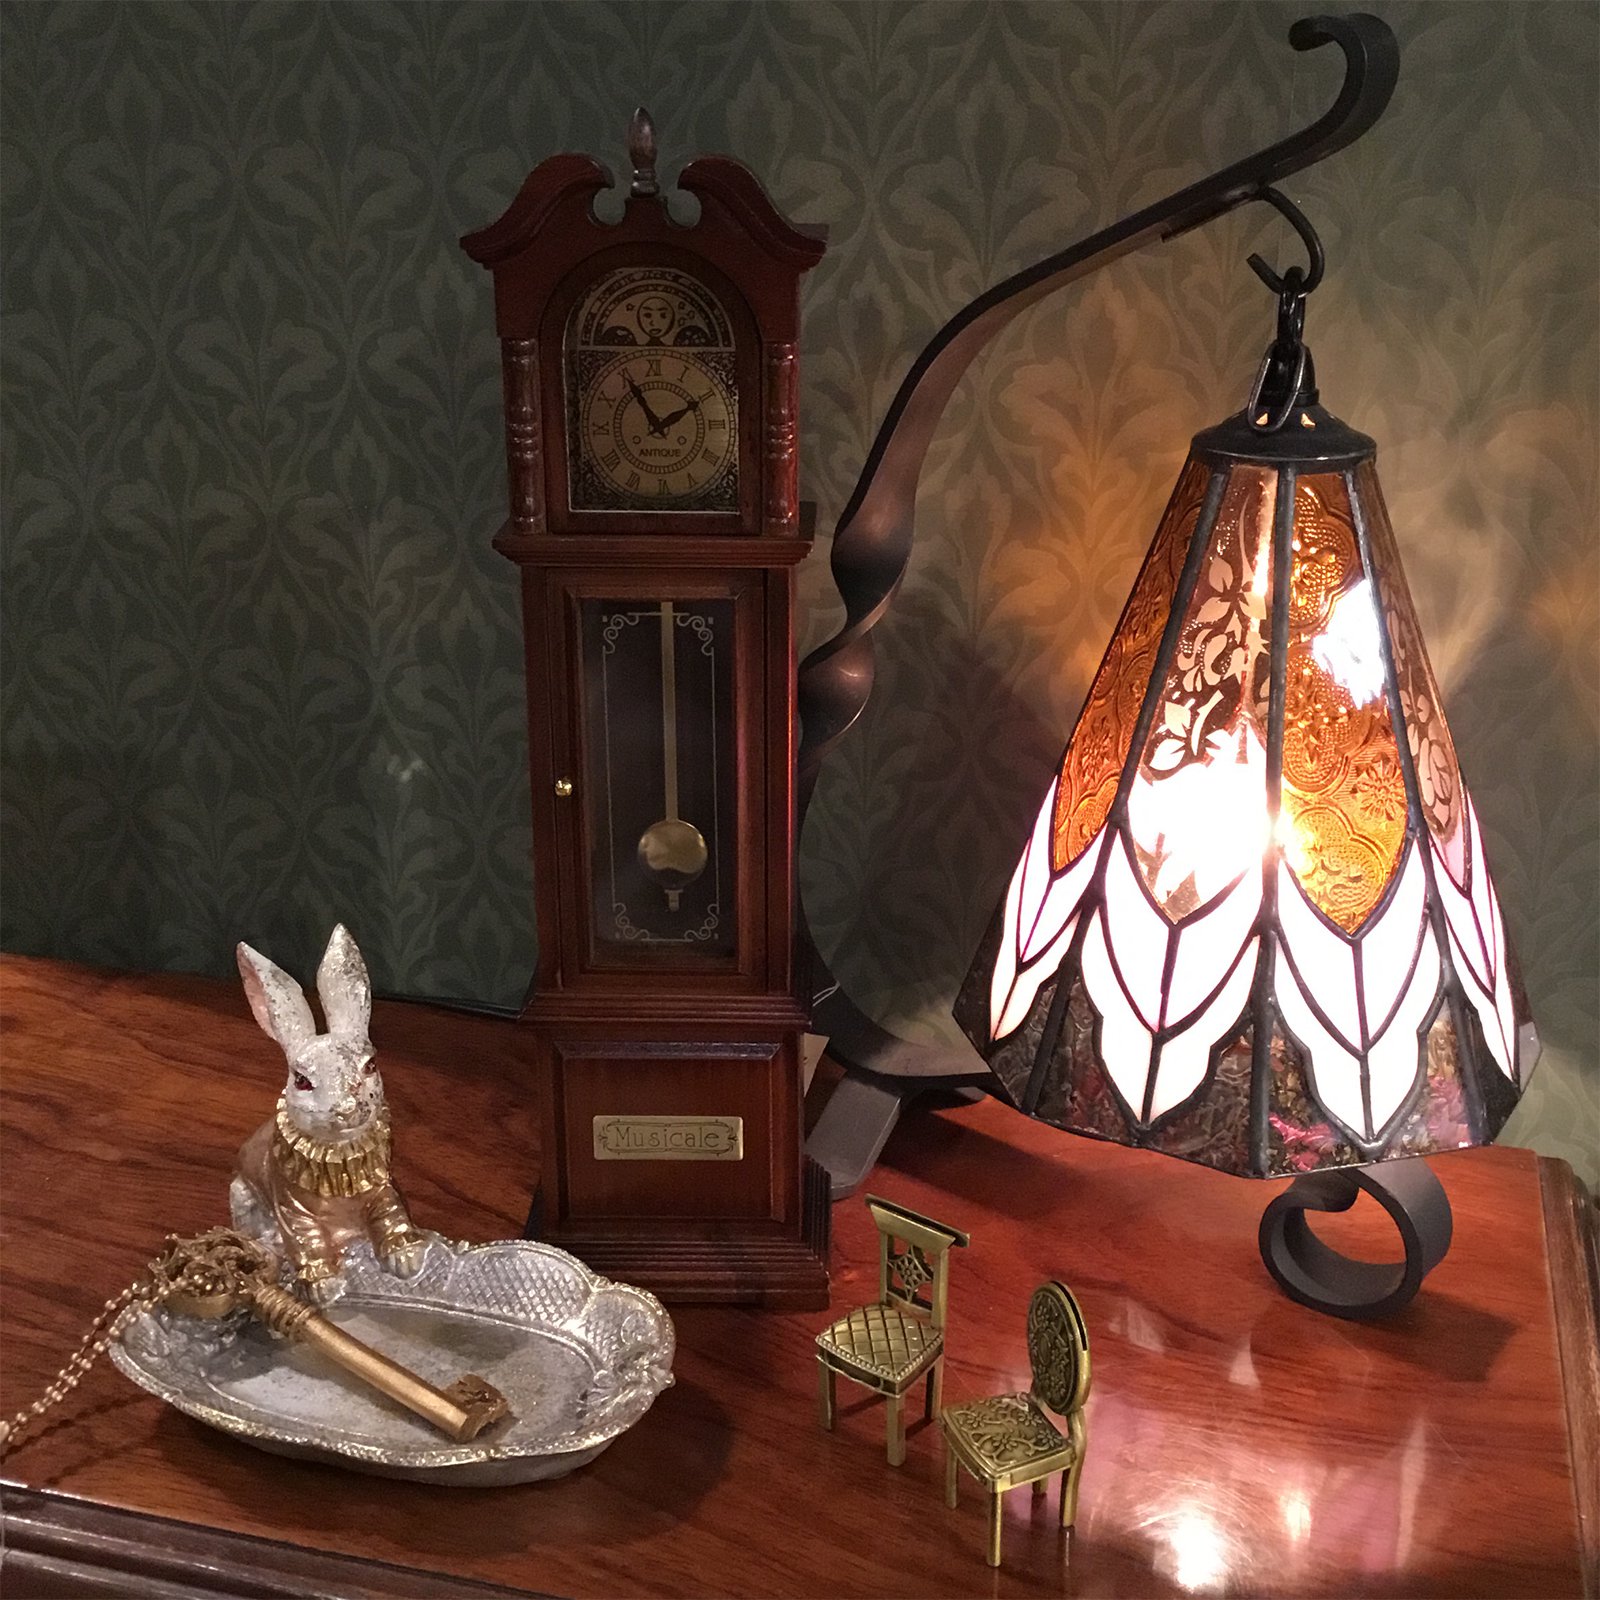 古時計型オルゴール「おじいさんの古時計」【木製ミニチュアオルゴールシリーズ】 - オルゴールのプレゼントならホールオブホールズショップ